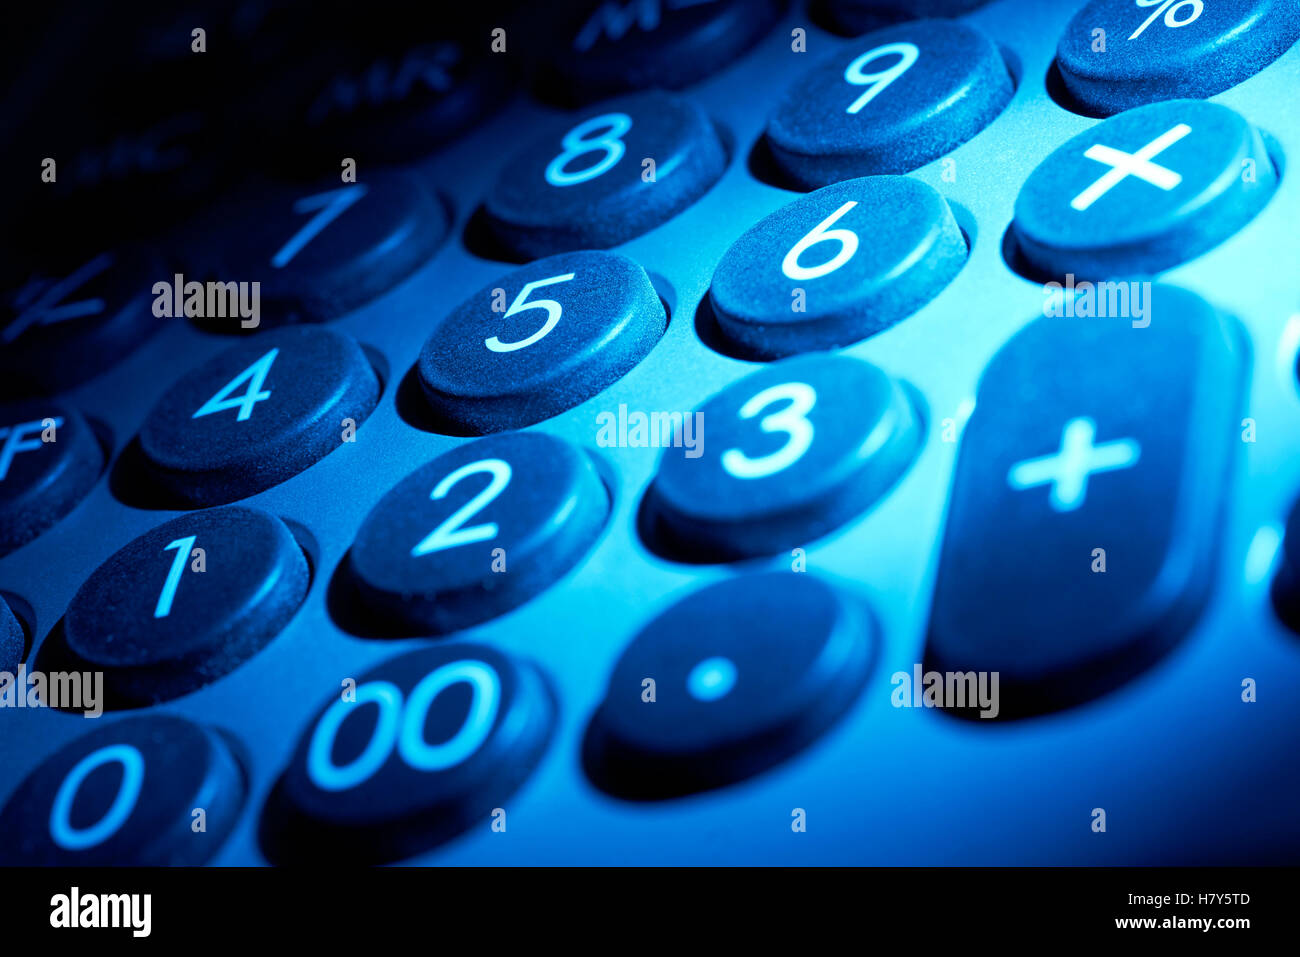 full frame blue illuminated numeric keypad detail Stock Photo